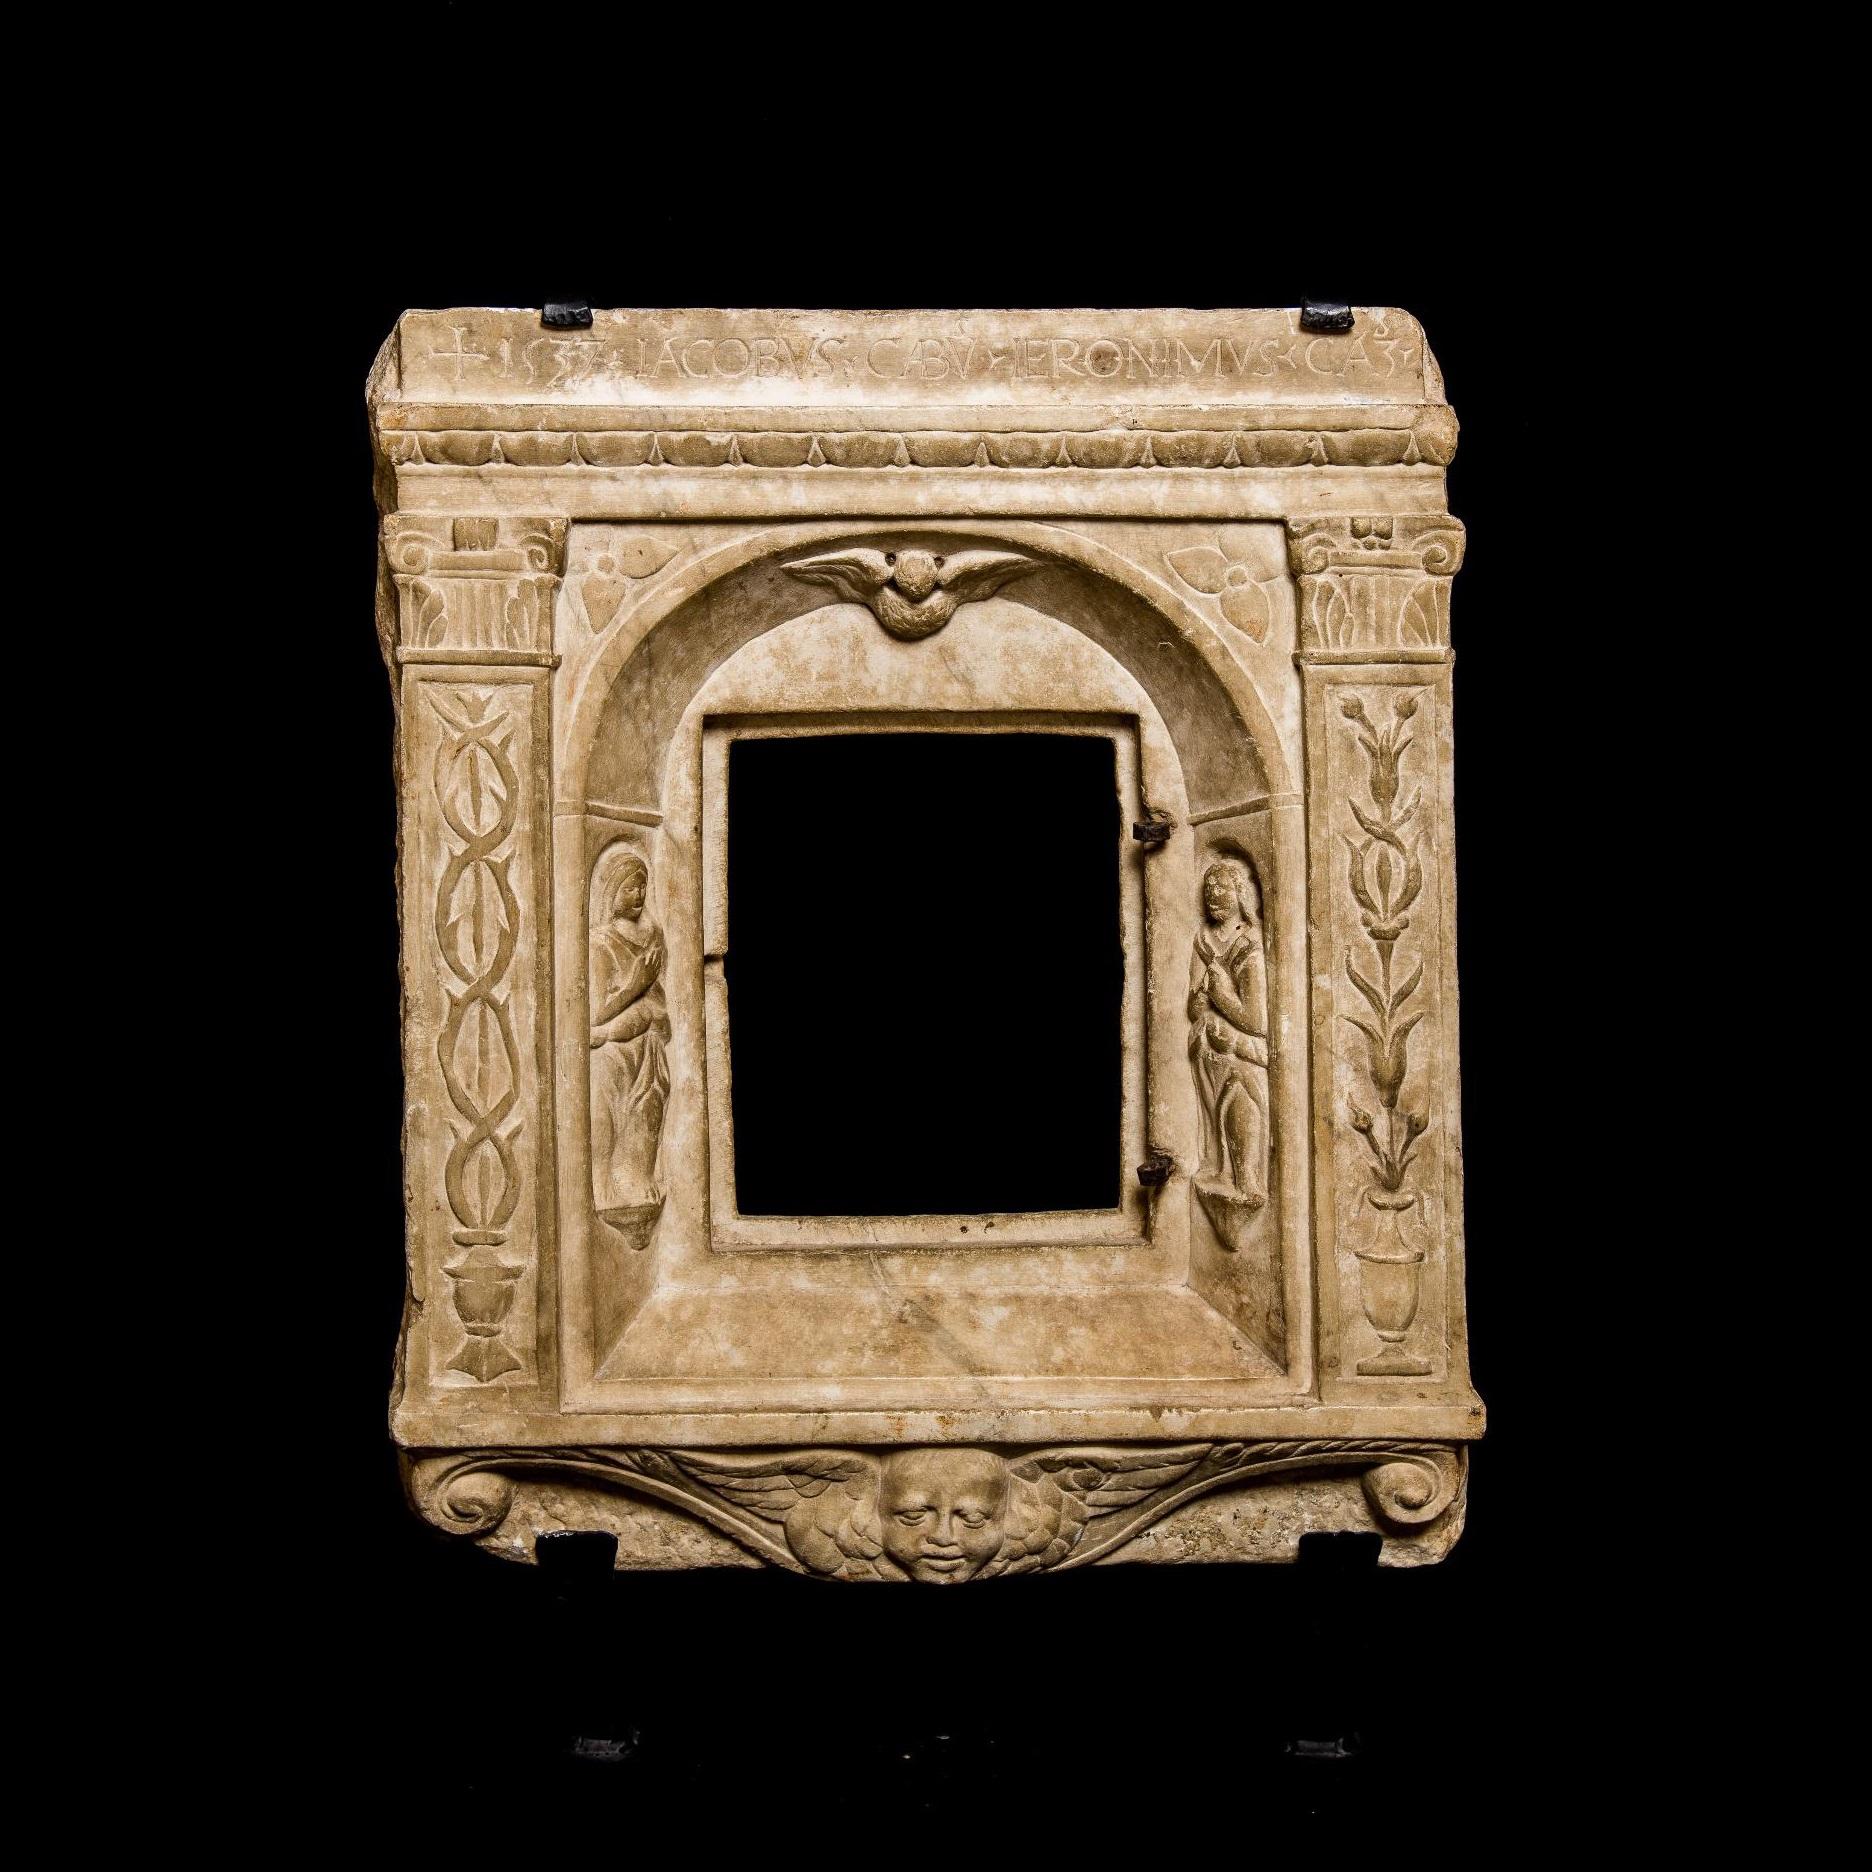 Unknown Figurative Sculpture - A Renaissance Tabernacle Front